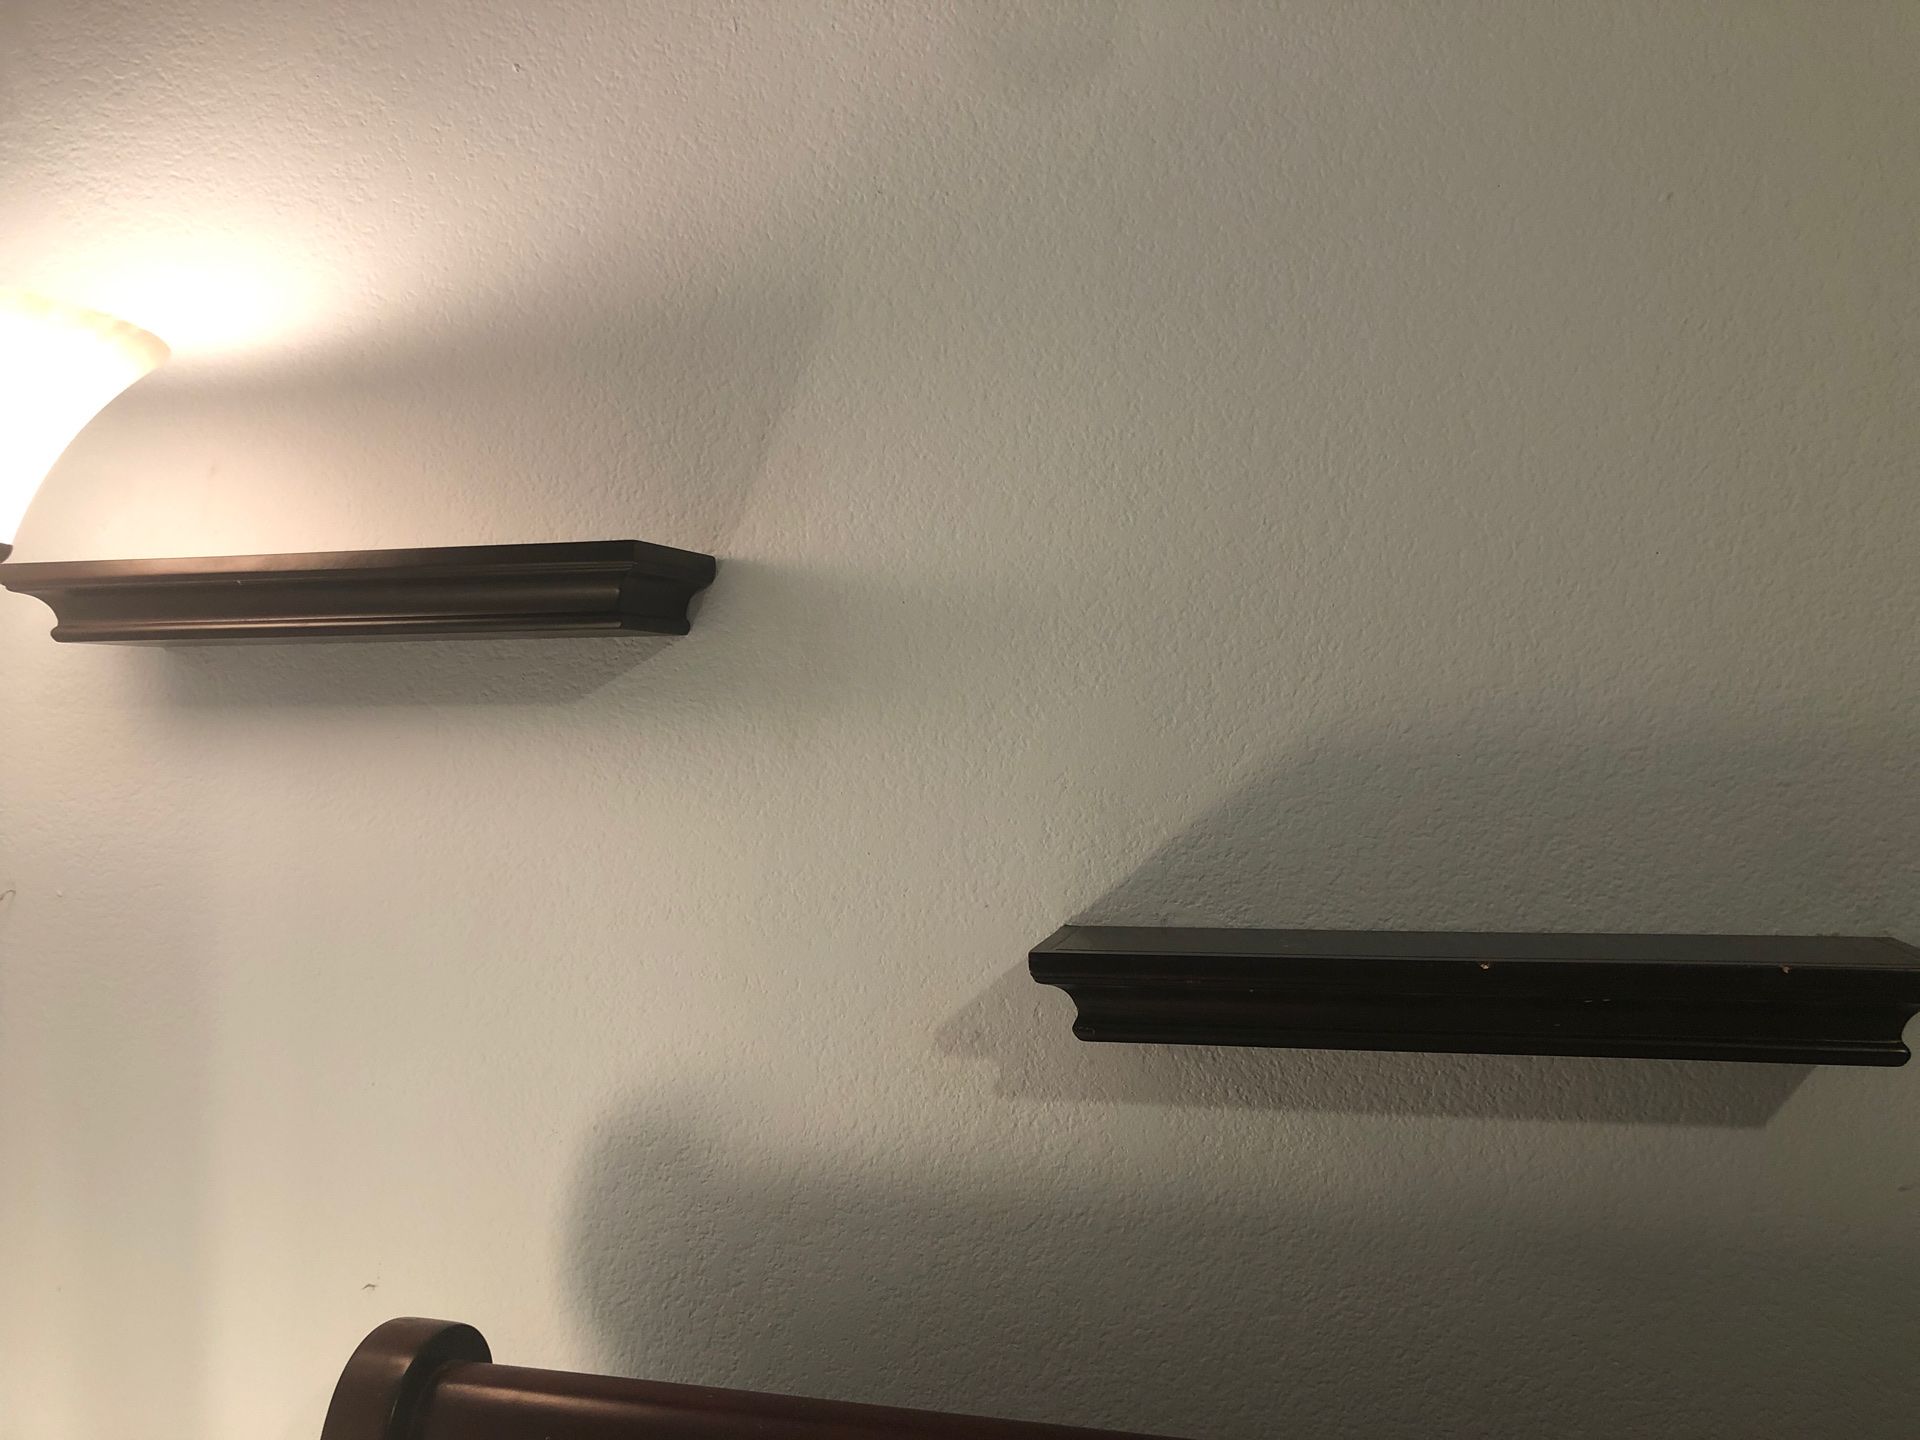 Wall shelves